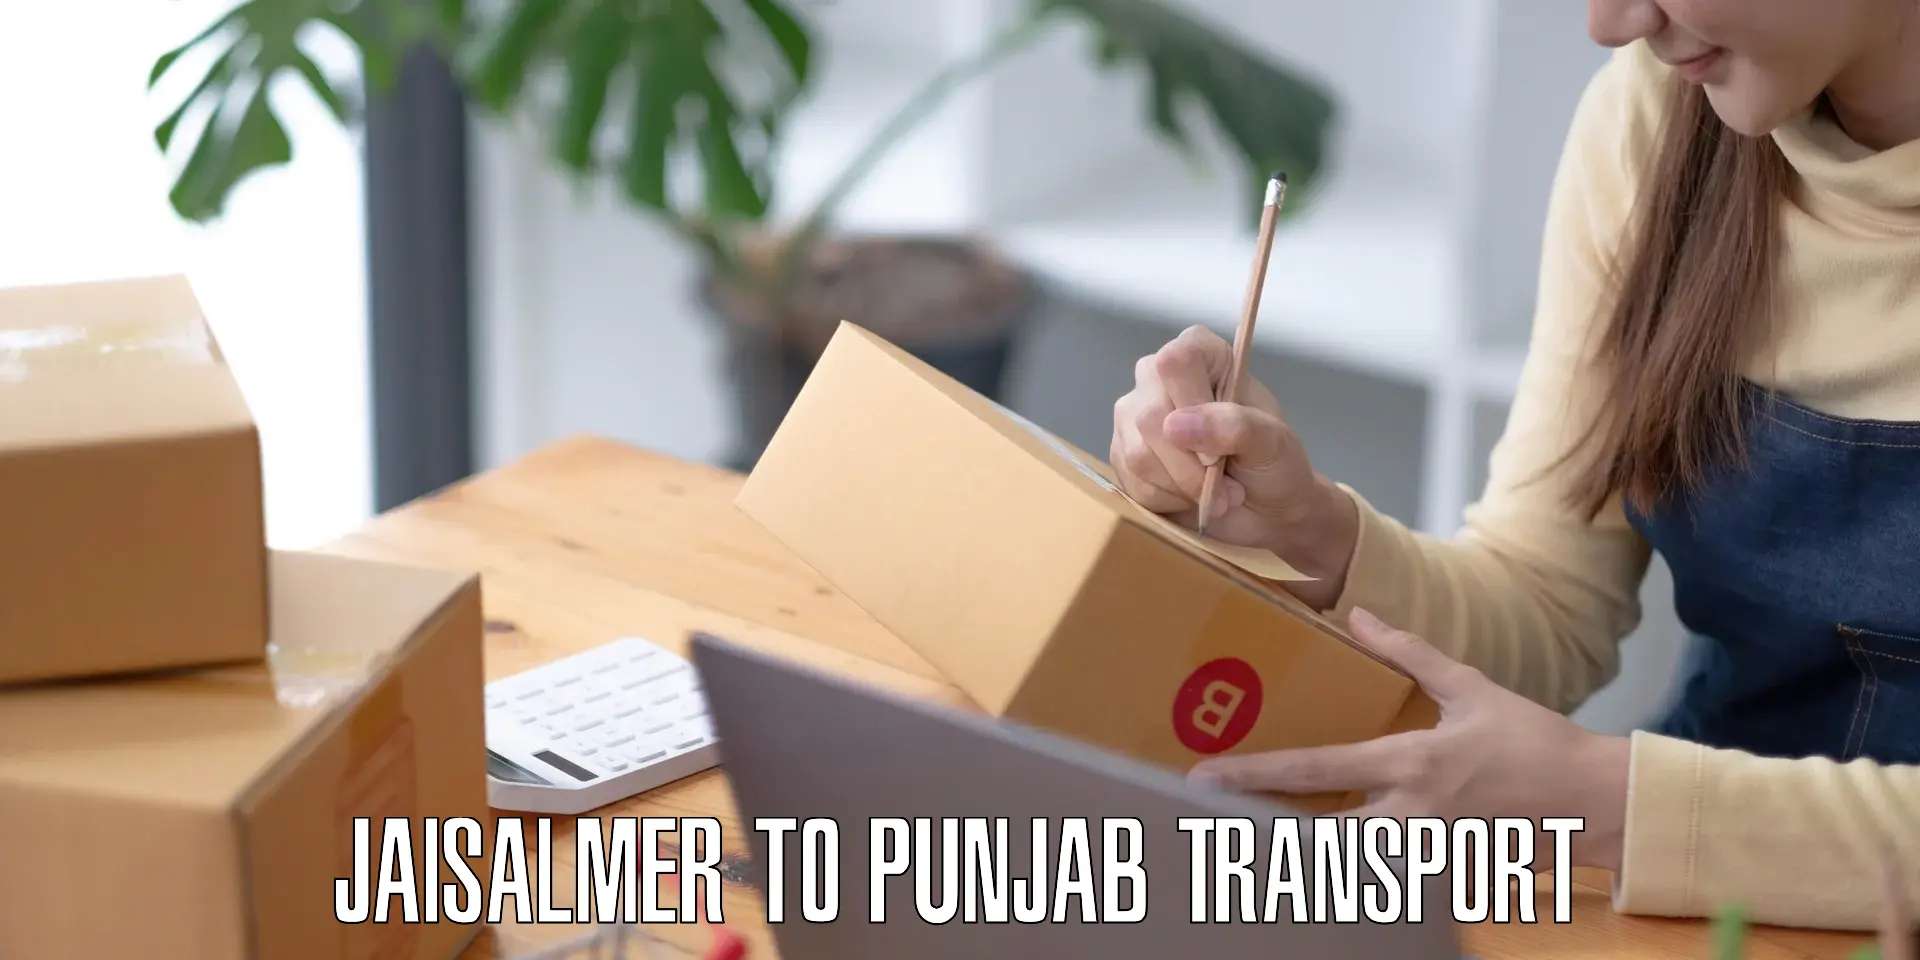 Furniture transport service Jaisalmer to Punjab